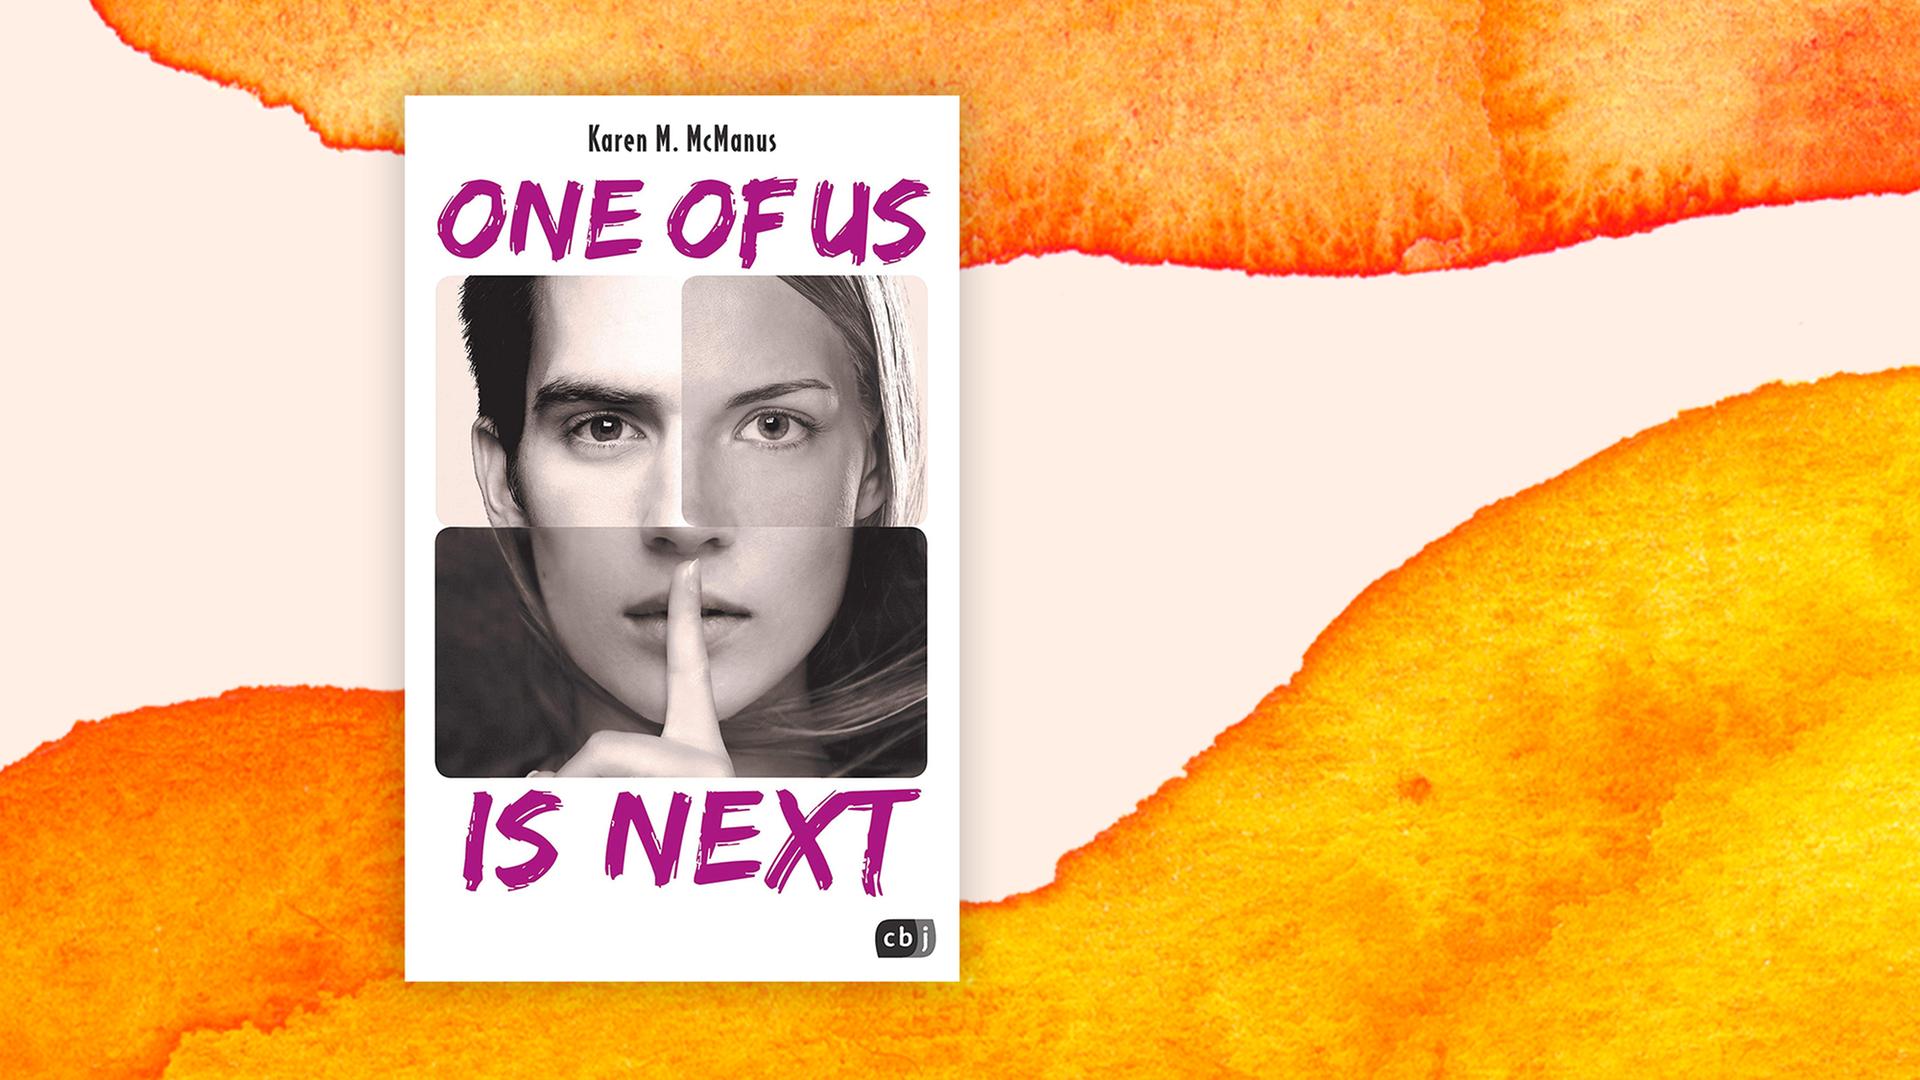 Cover des neuen Jugendbuchs von Karen M. McManus - es heißt "One of us is next".